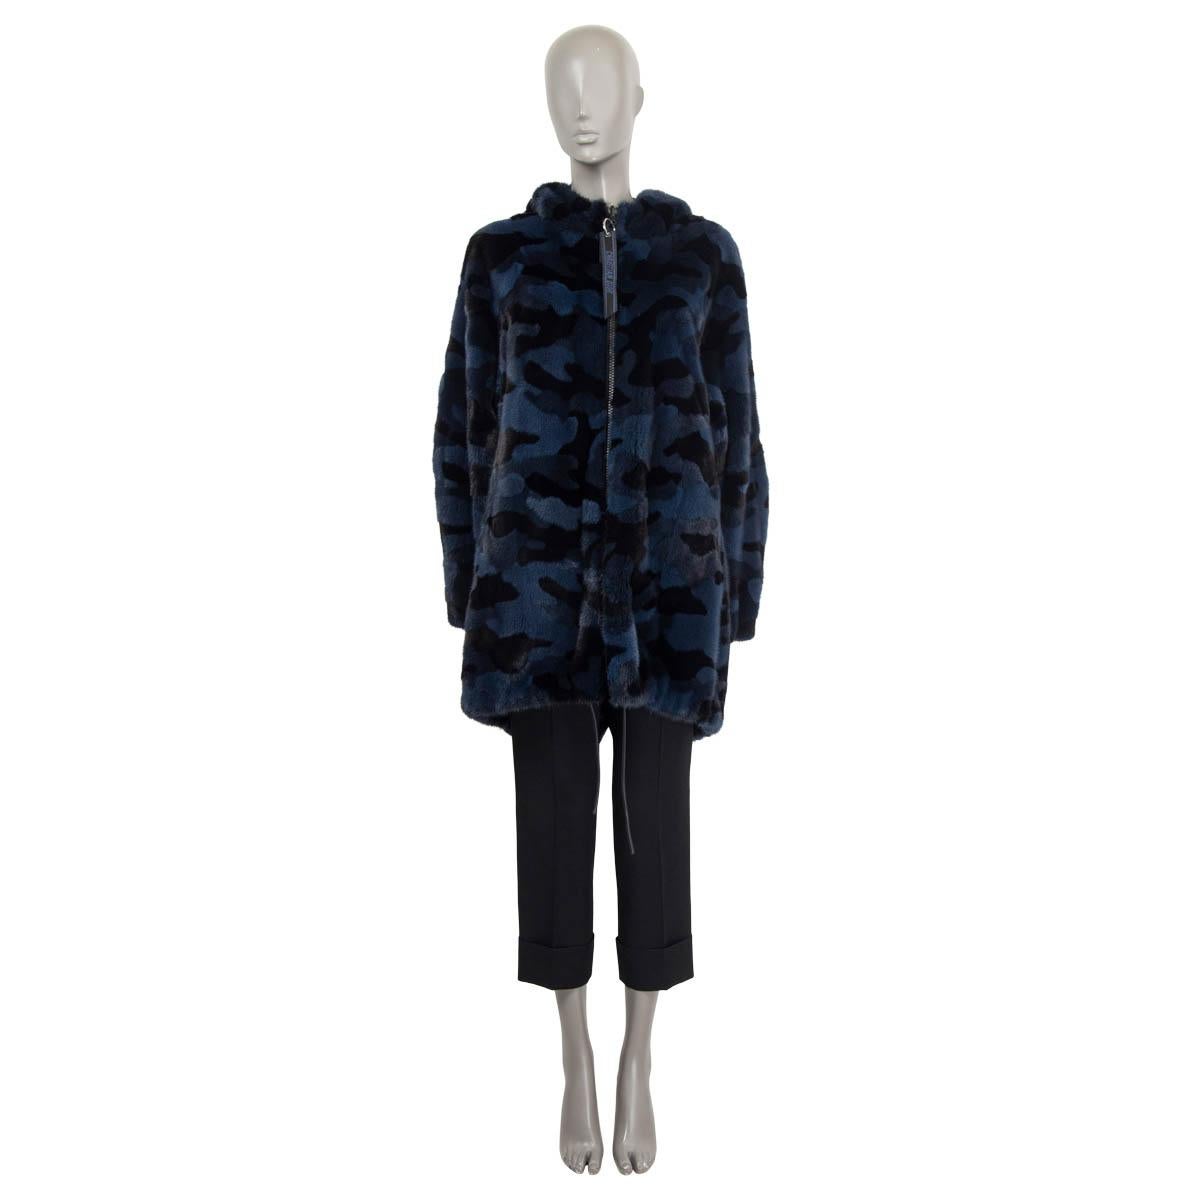 Manteau zippé à capuche en fourrure de vison camouflée marine et noire (100%) Christian Dior, 100% authentique. Il est doté de manches longues, d'une fente dans le dos et de deux poches latérales fendues. S'ouvre par une fermeture éclair 